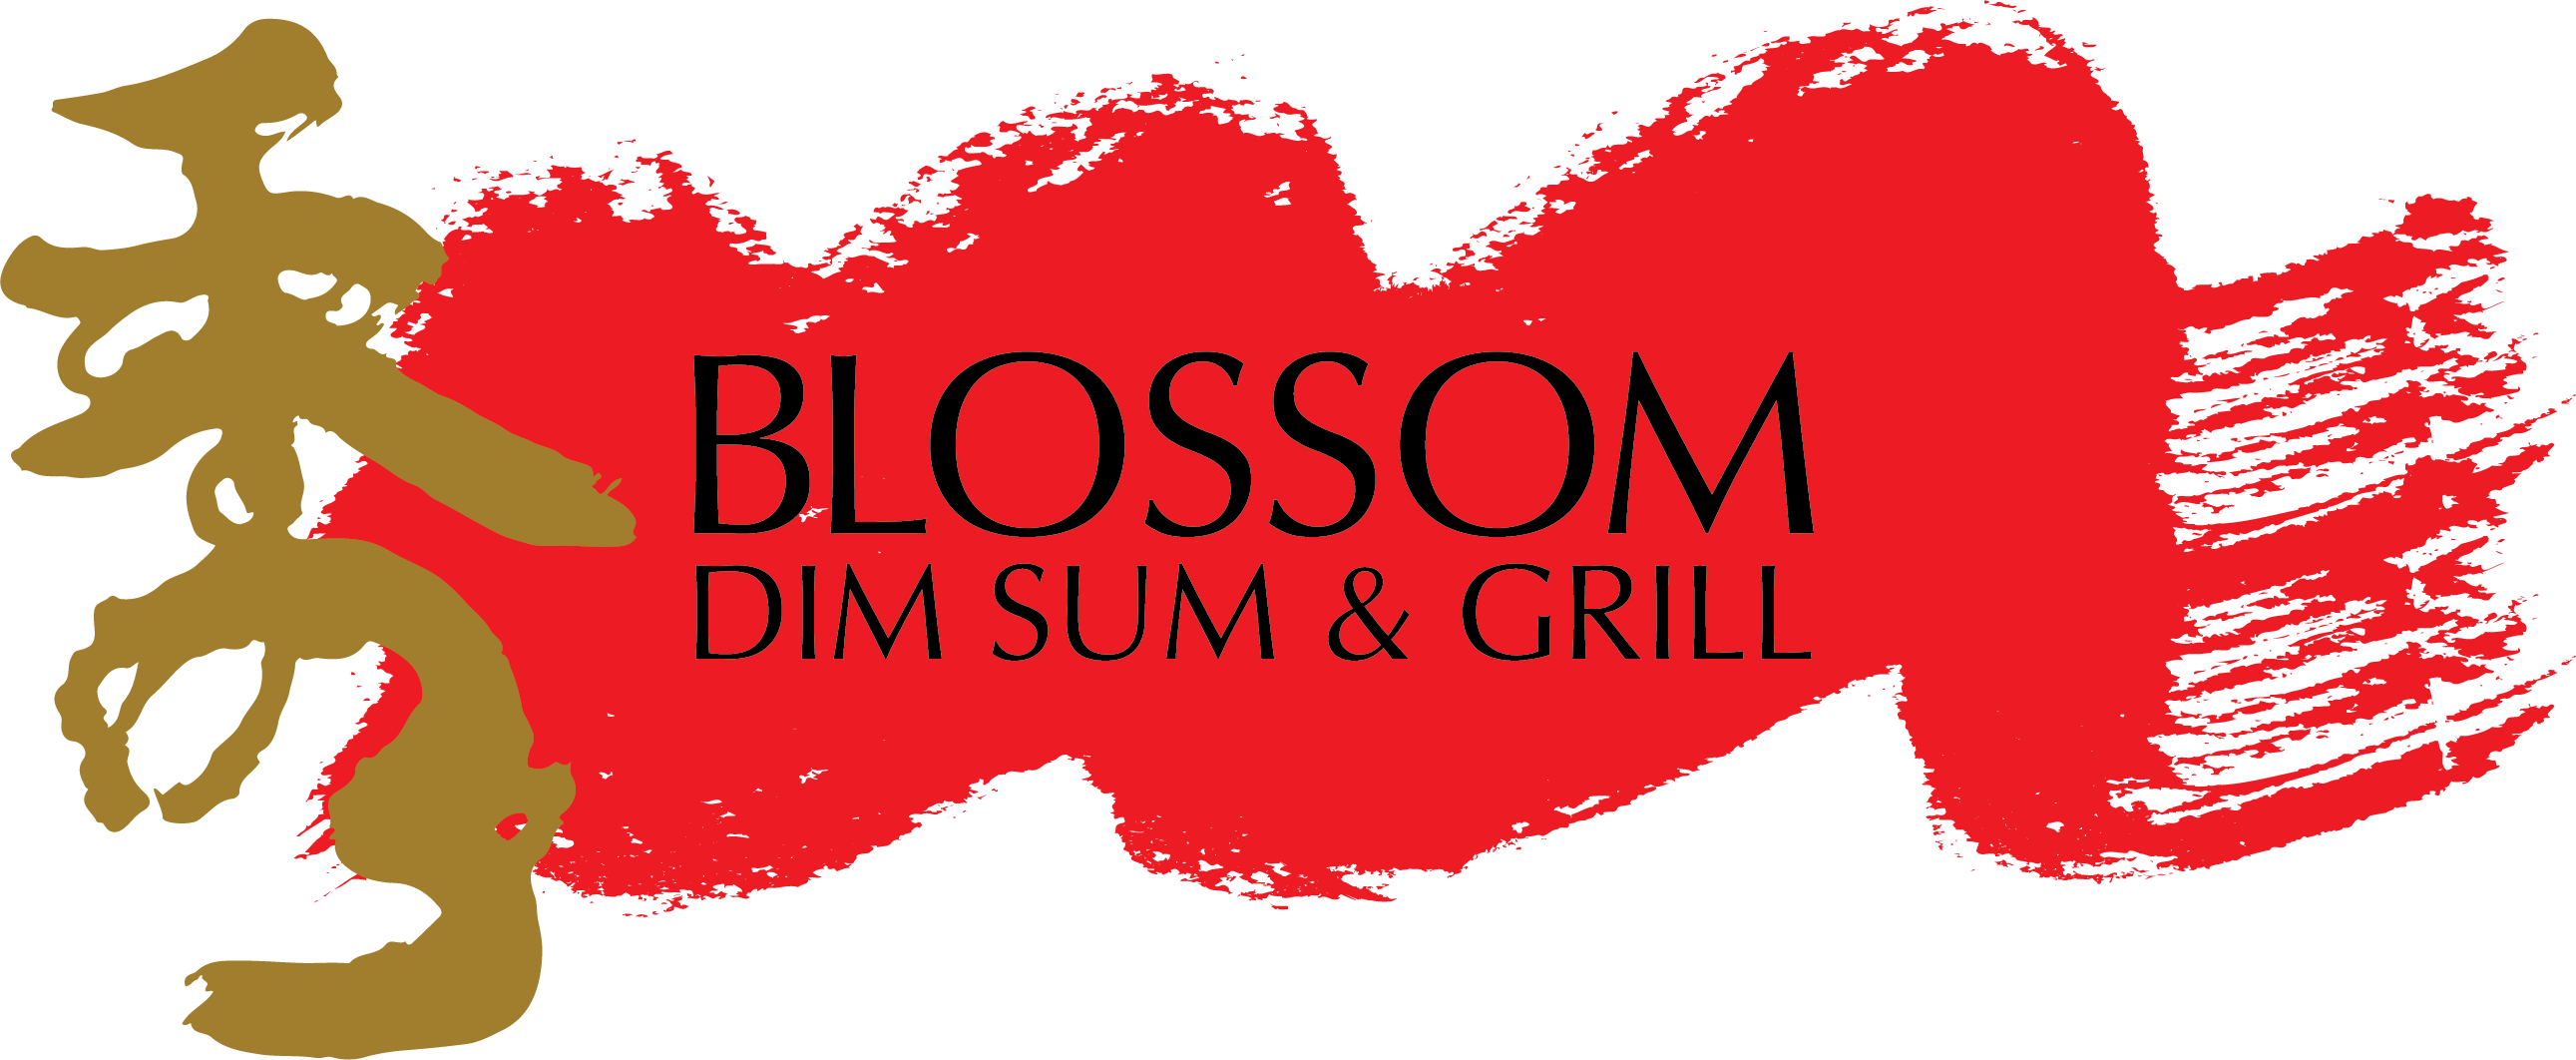 203656 Blossom Dim Sum_LOGO FINAL (1) (1).png